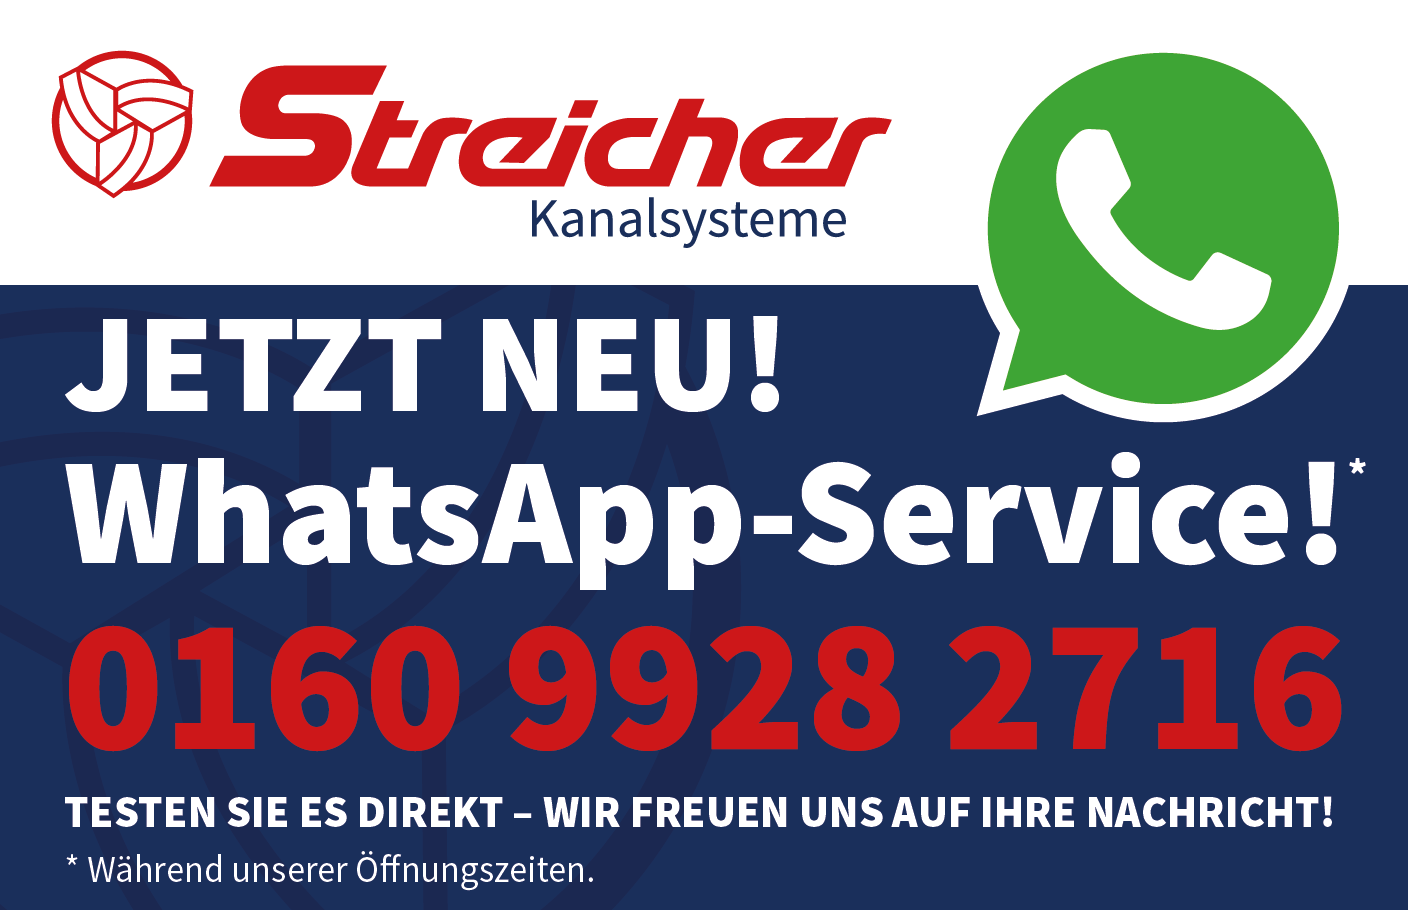 Kontaktinformationen zum Streicher Kanalsysteme Whatsapp-Service